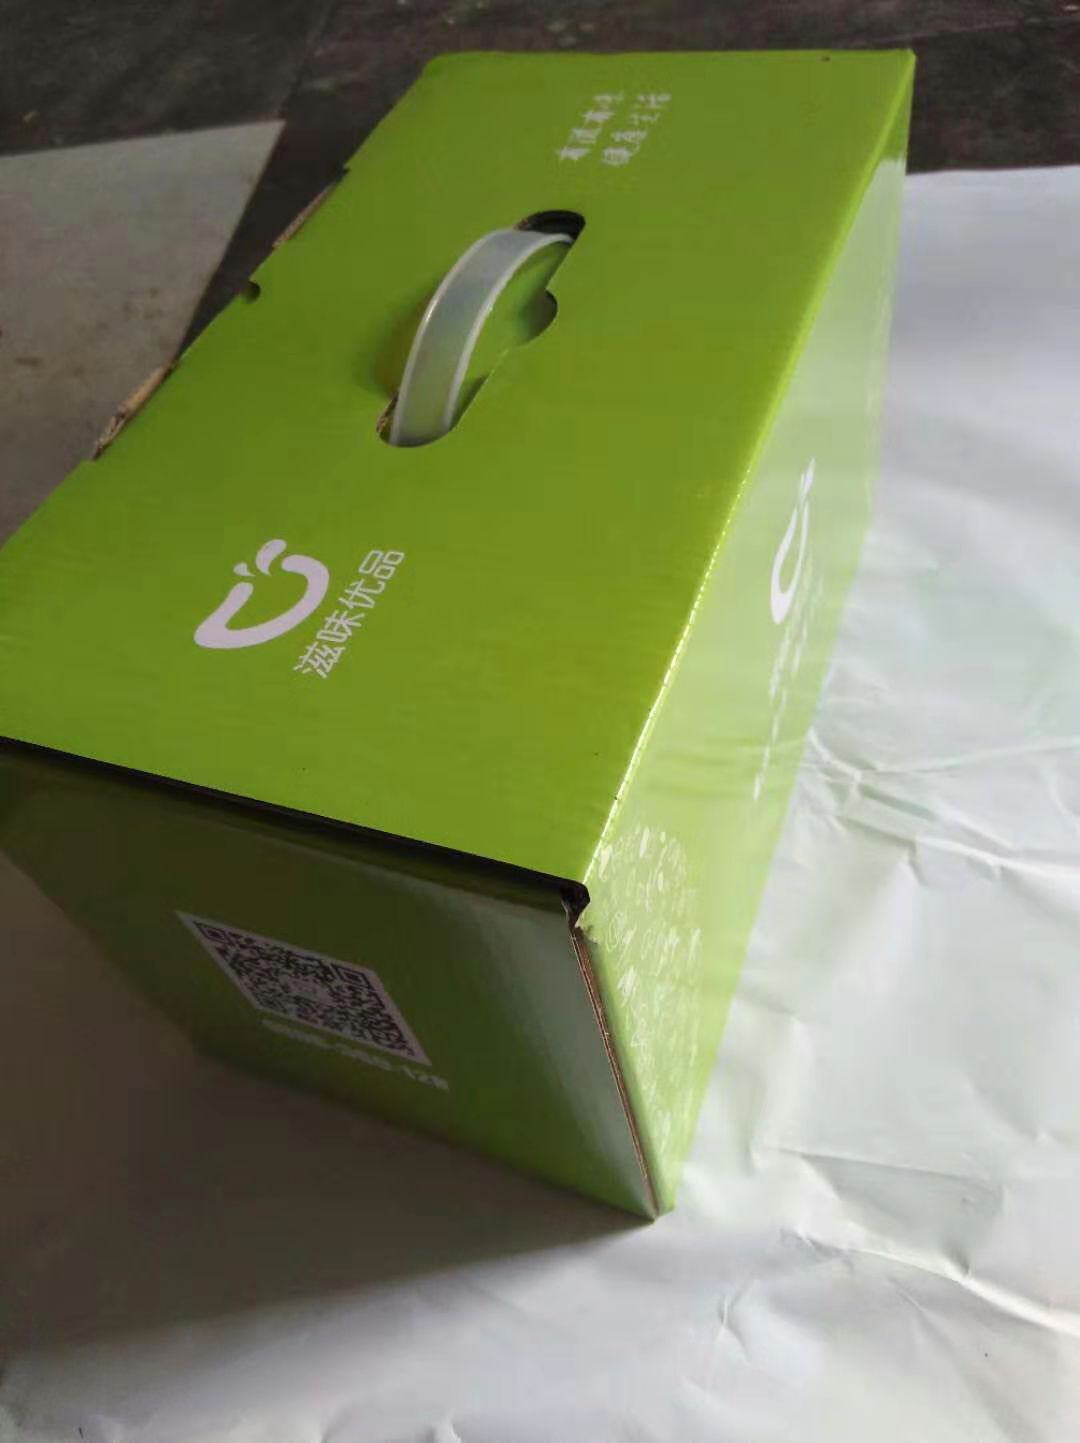 纸类包装制品厂家生产包装盒 包装箱 各种规格样式的纸箱定制